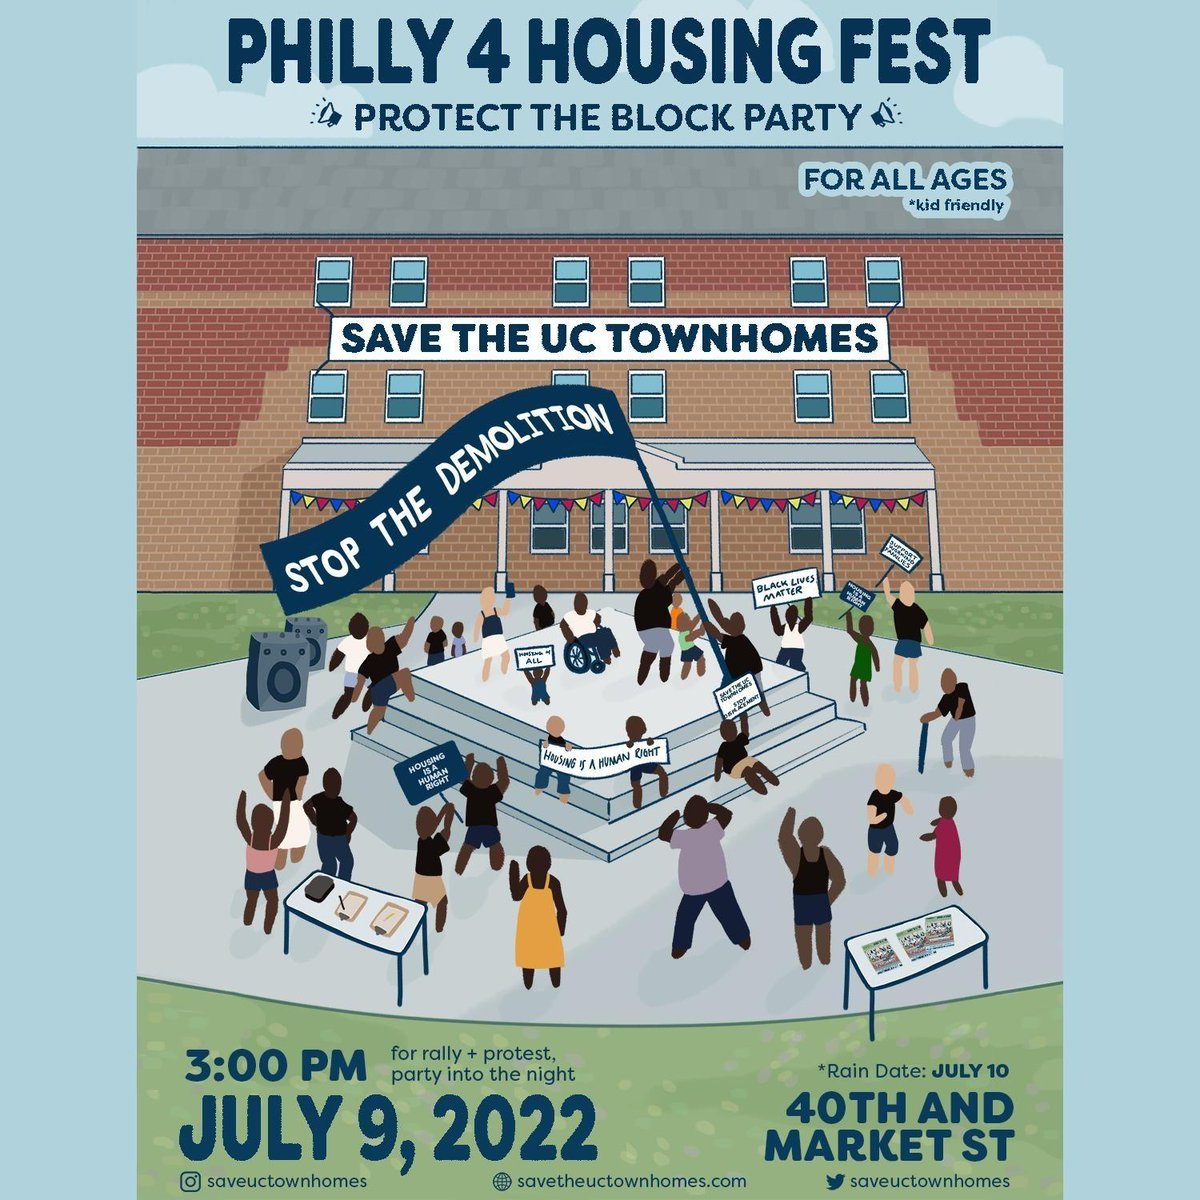 Este sábado, 9 de julio en Filadelfia, venga a la Fiesta de Vivienda Philly 4 de Save the UC Townhomes / Protect The Block Party en 40th y Market St., a partir de las 3:XNUMX p. m.: